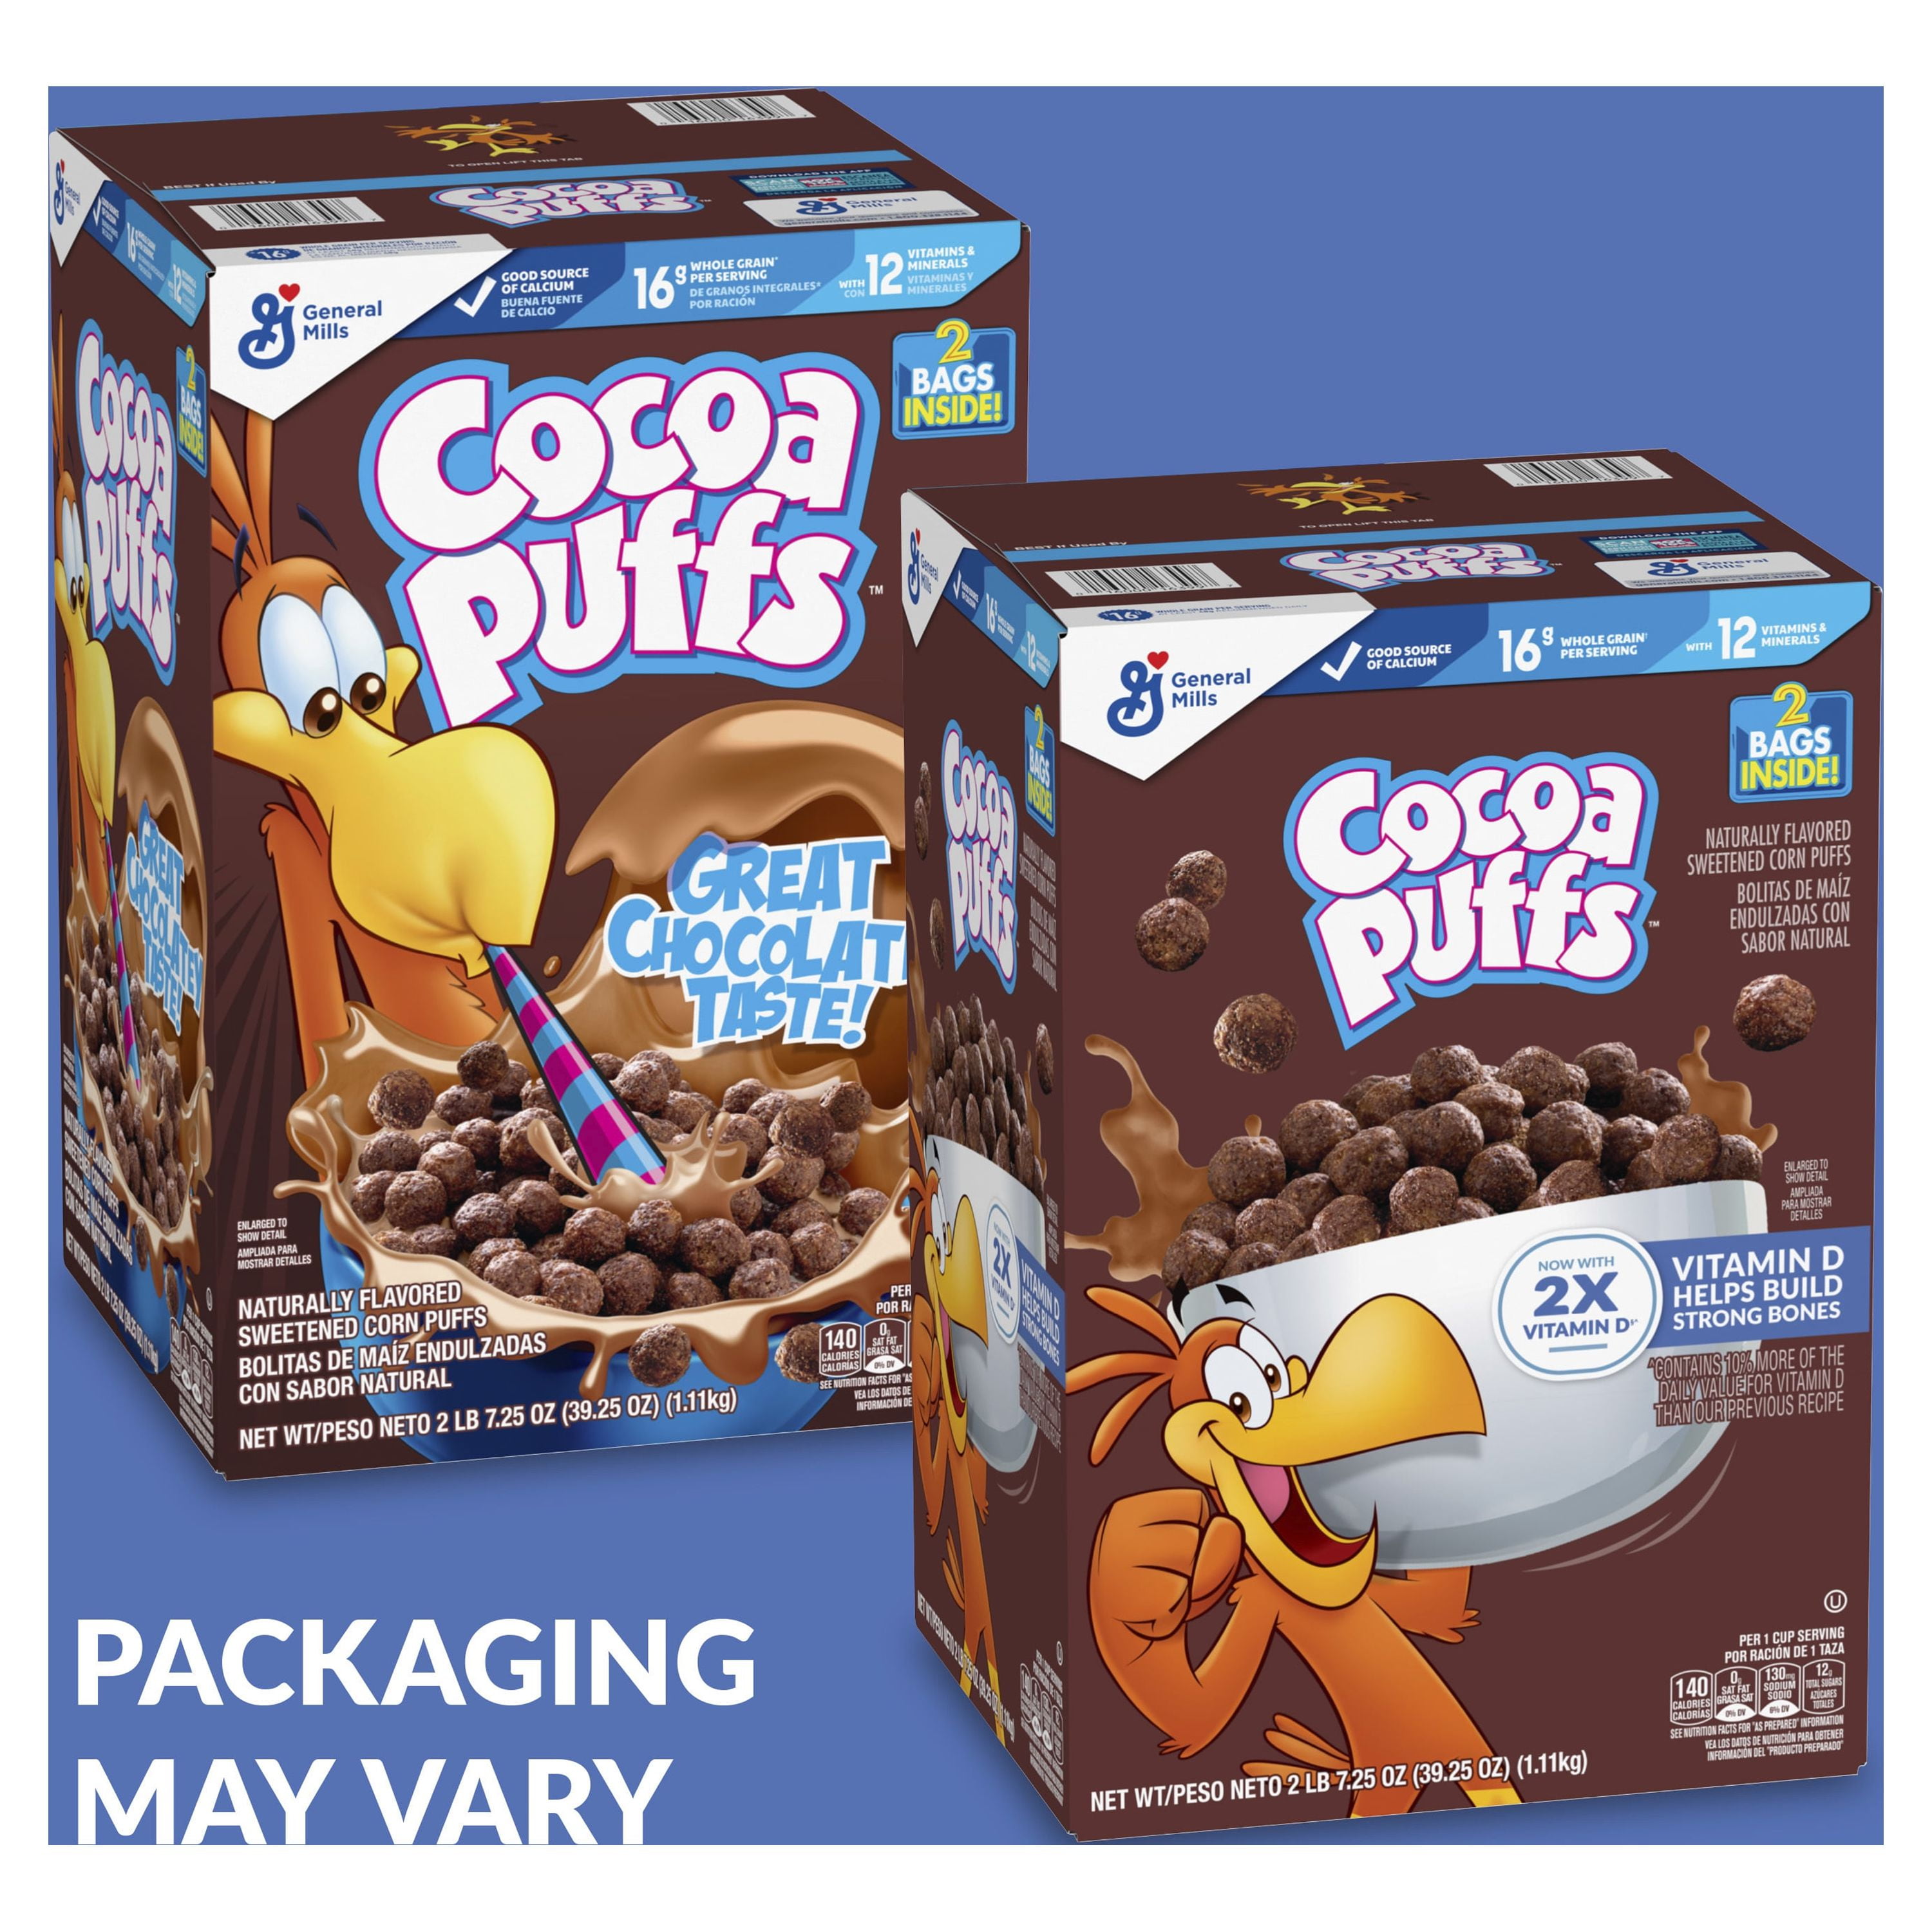 Online shop selling Puleva Max Cereals Cocoa